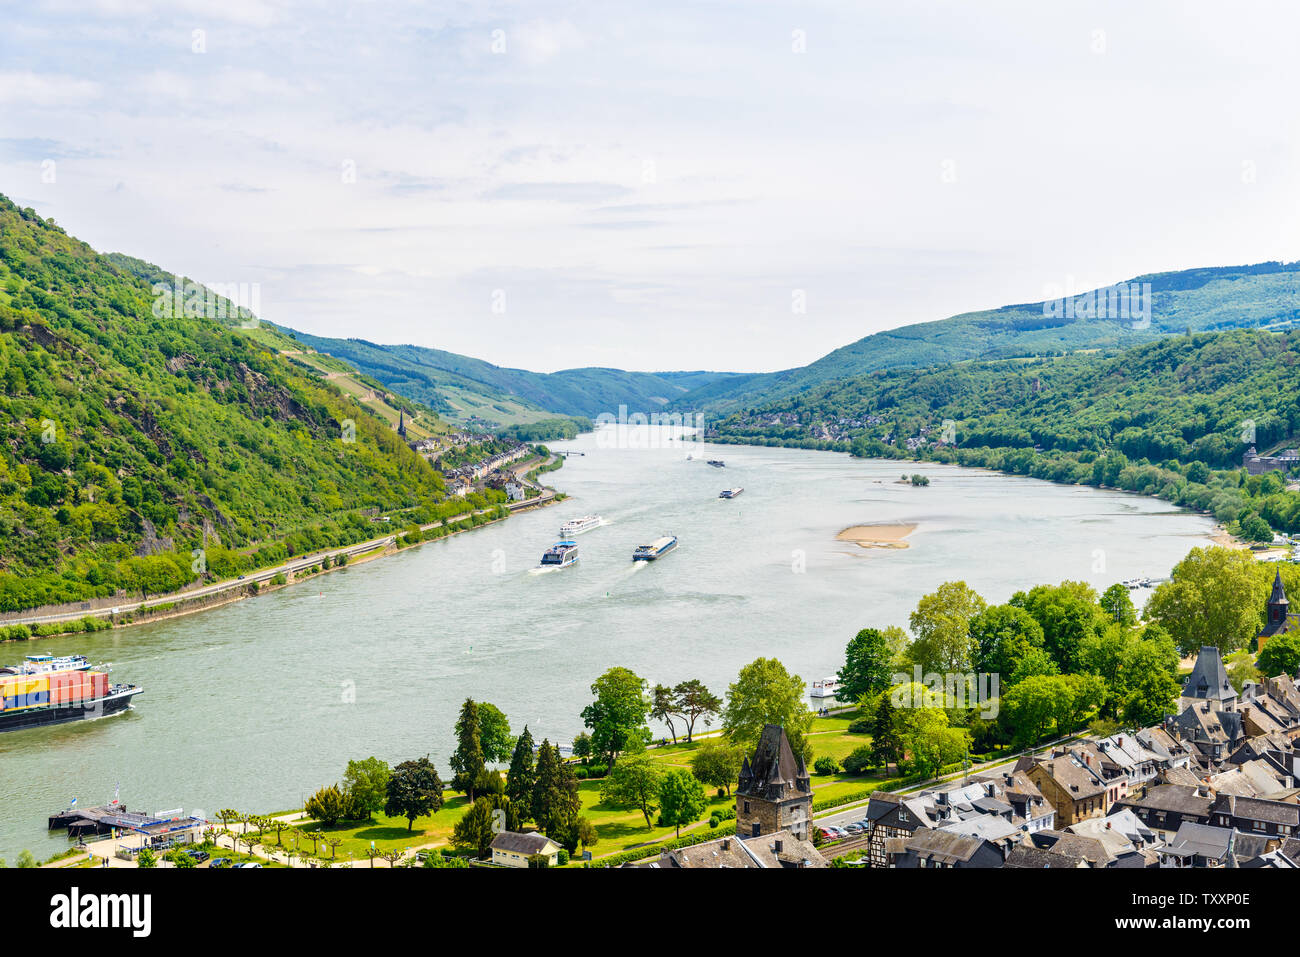 Bacharach am Rhein. Belle vue panoramique aérienne vue de carte postale sur la rivière du Rhin moyen, (Rhein, Mittelrhein) avec des navires. Rhénanie-palatinat, Allemagne Banque D'Images